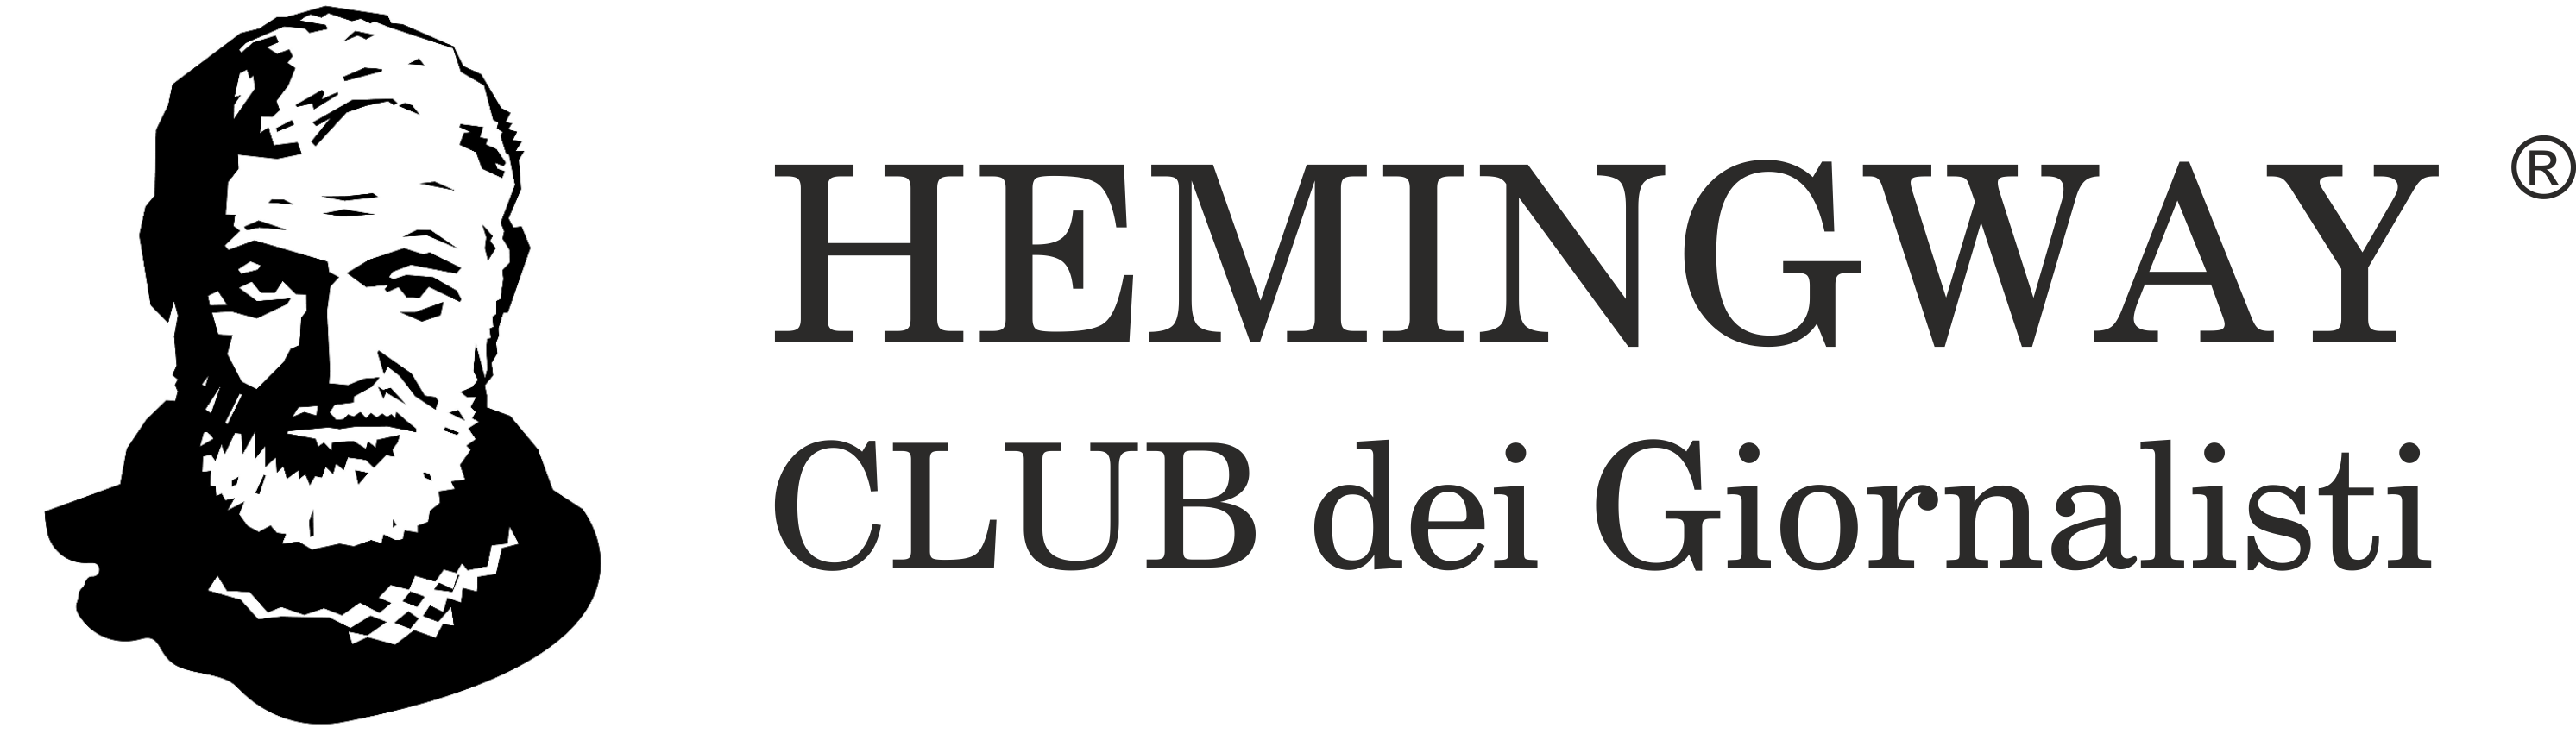 Hemingway Club